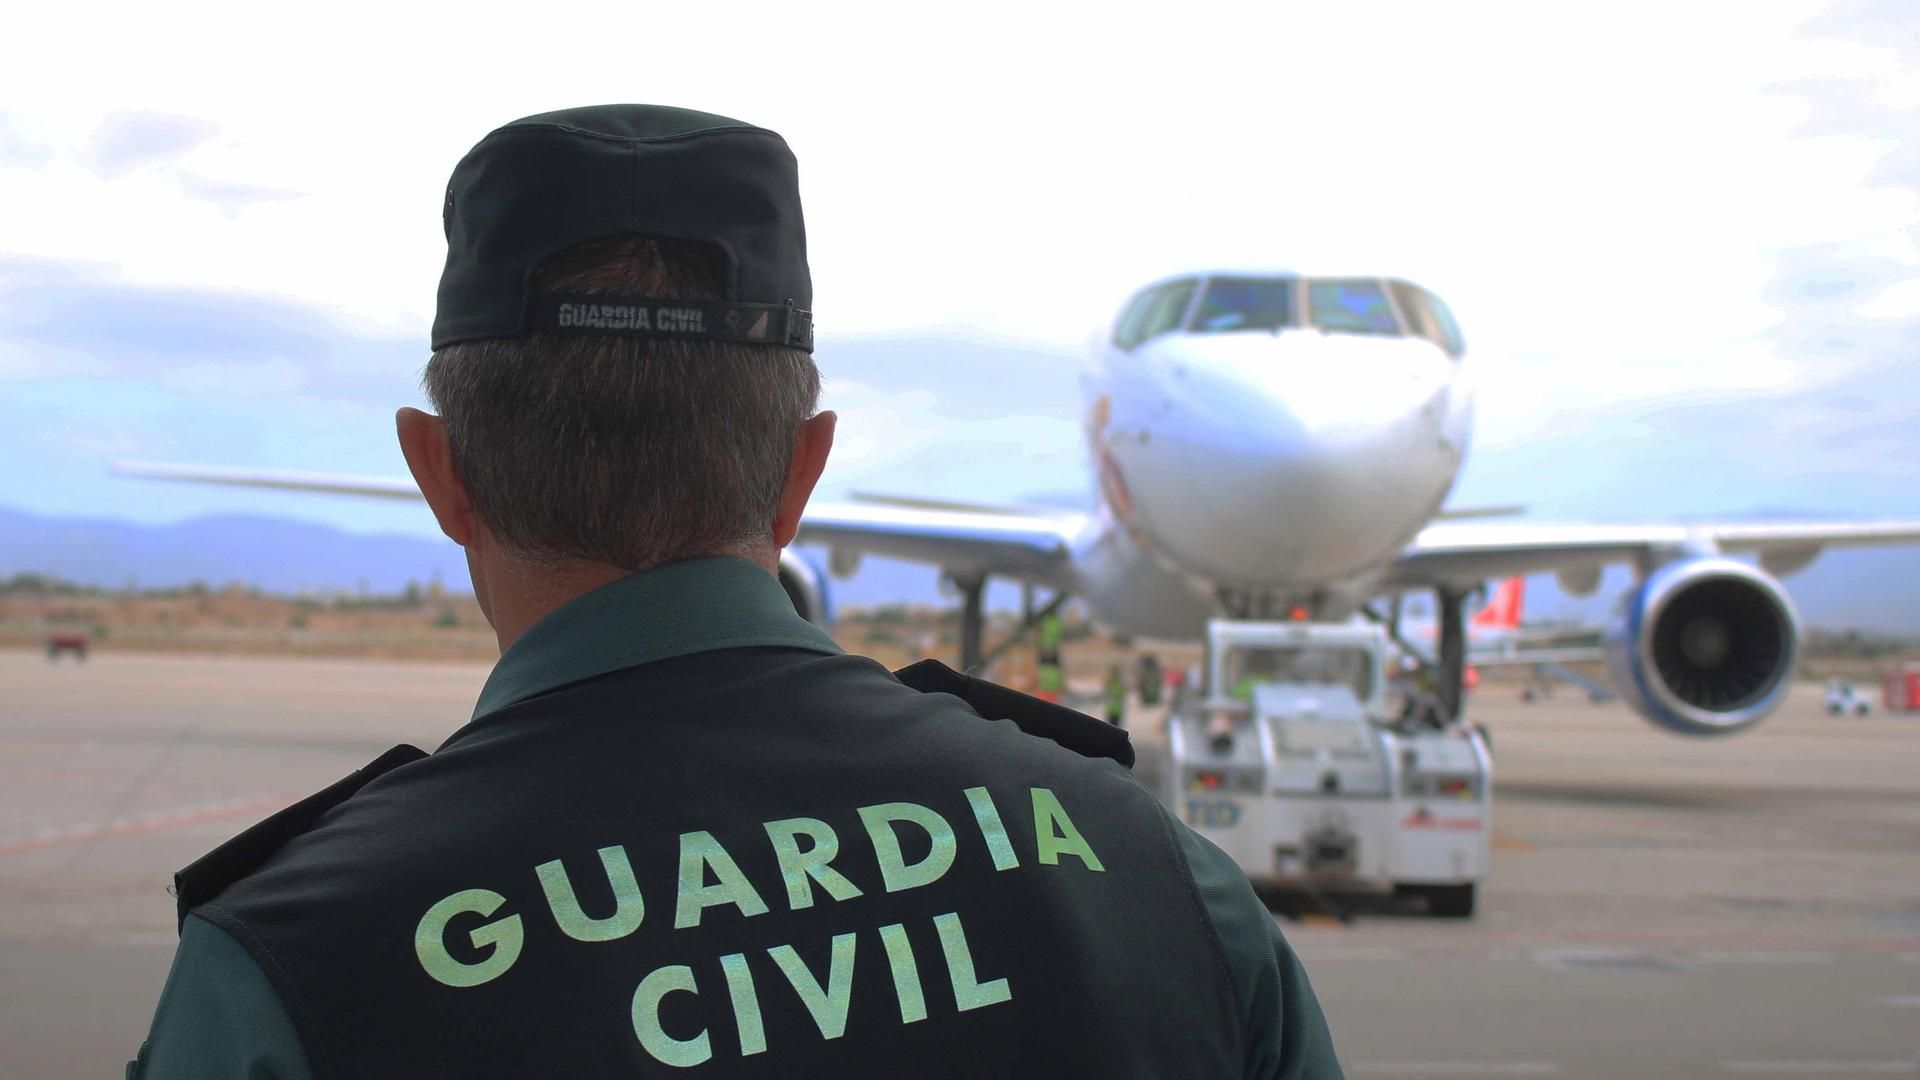 Condannare una guardia civile per aver lavorato per una compagnia aerea privata senza permesso